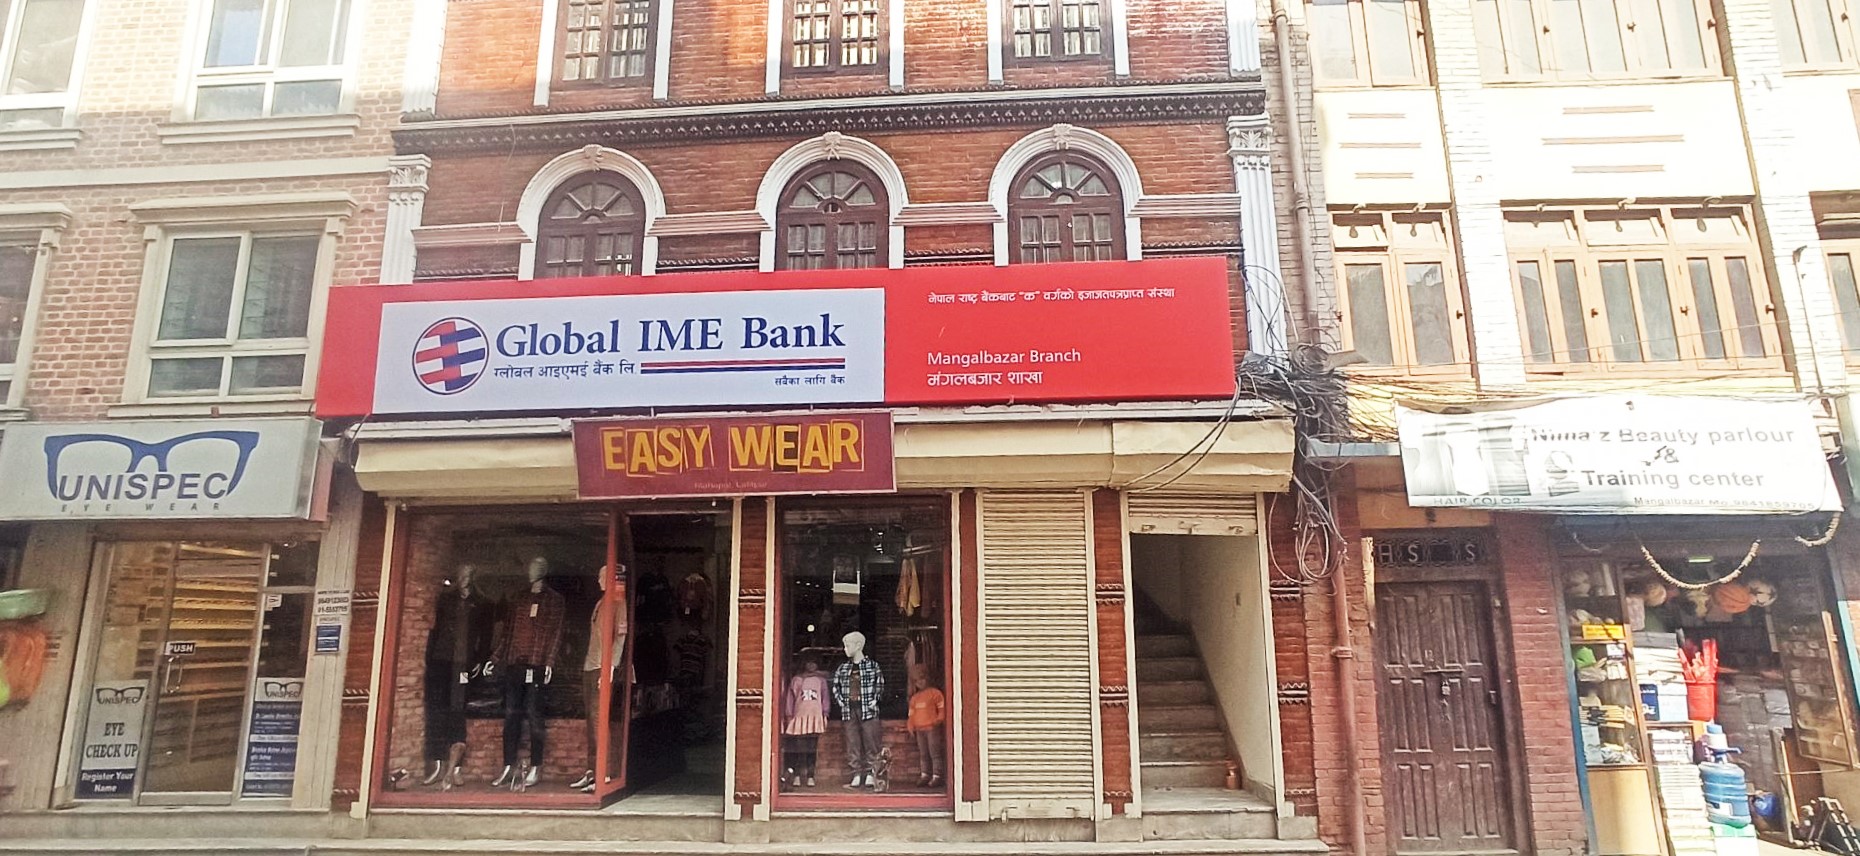 ग्लोबल आइएमई बैंकको २८२ औँ शाखा ललितपुर मंगलबजारमा